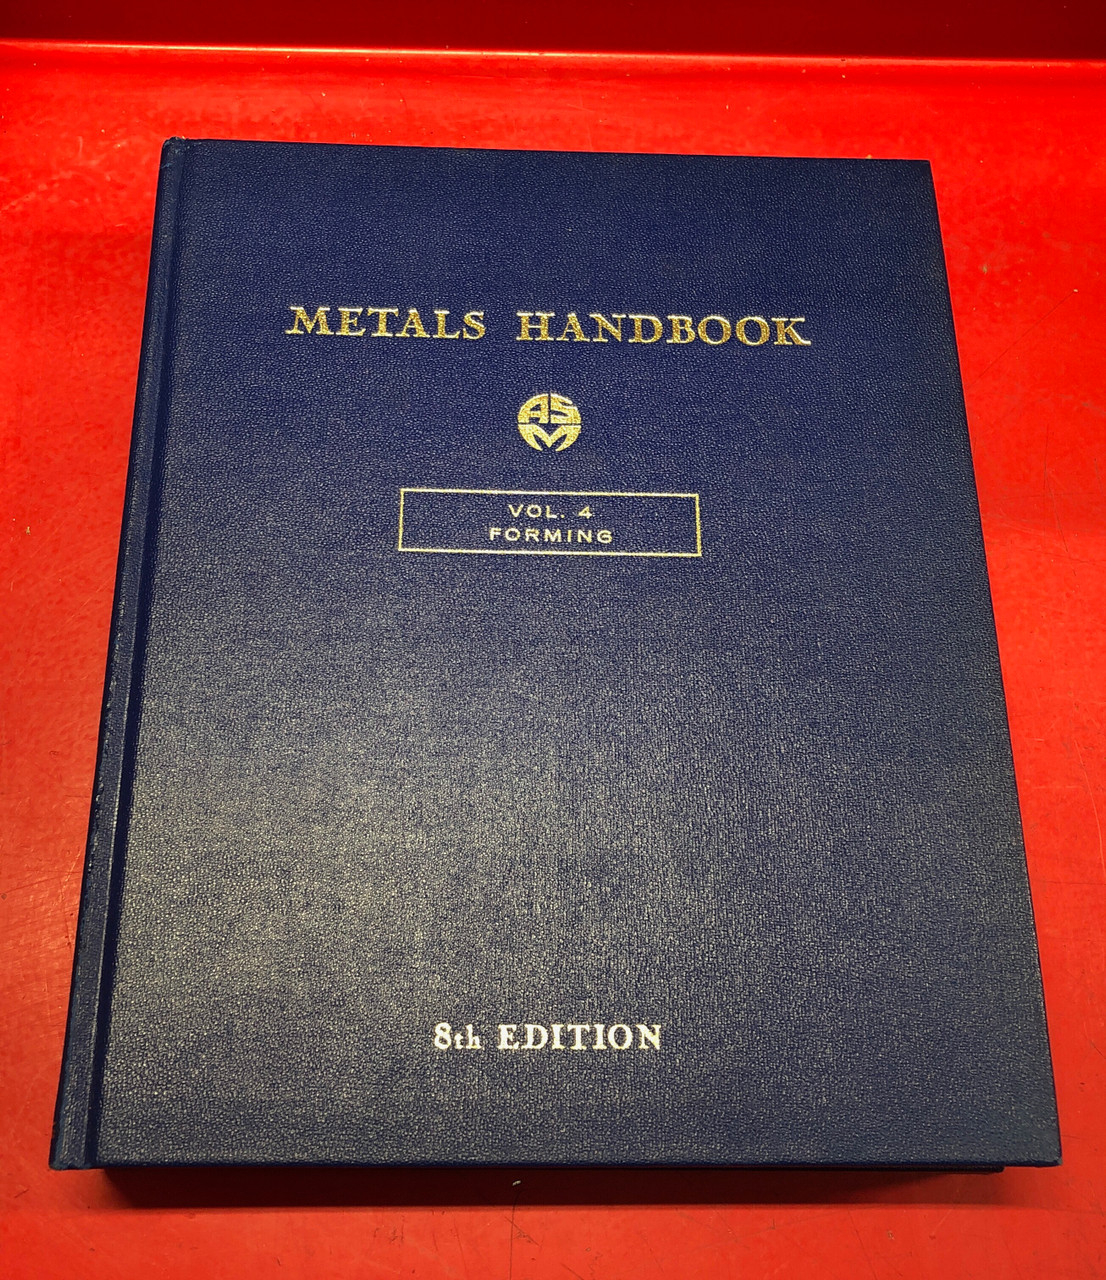 ASM Metals Handbook  Volume 4 Forming 8th Edition